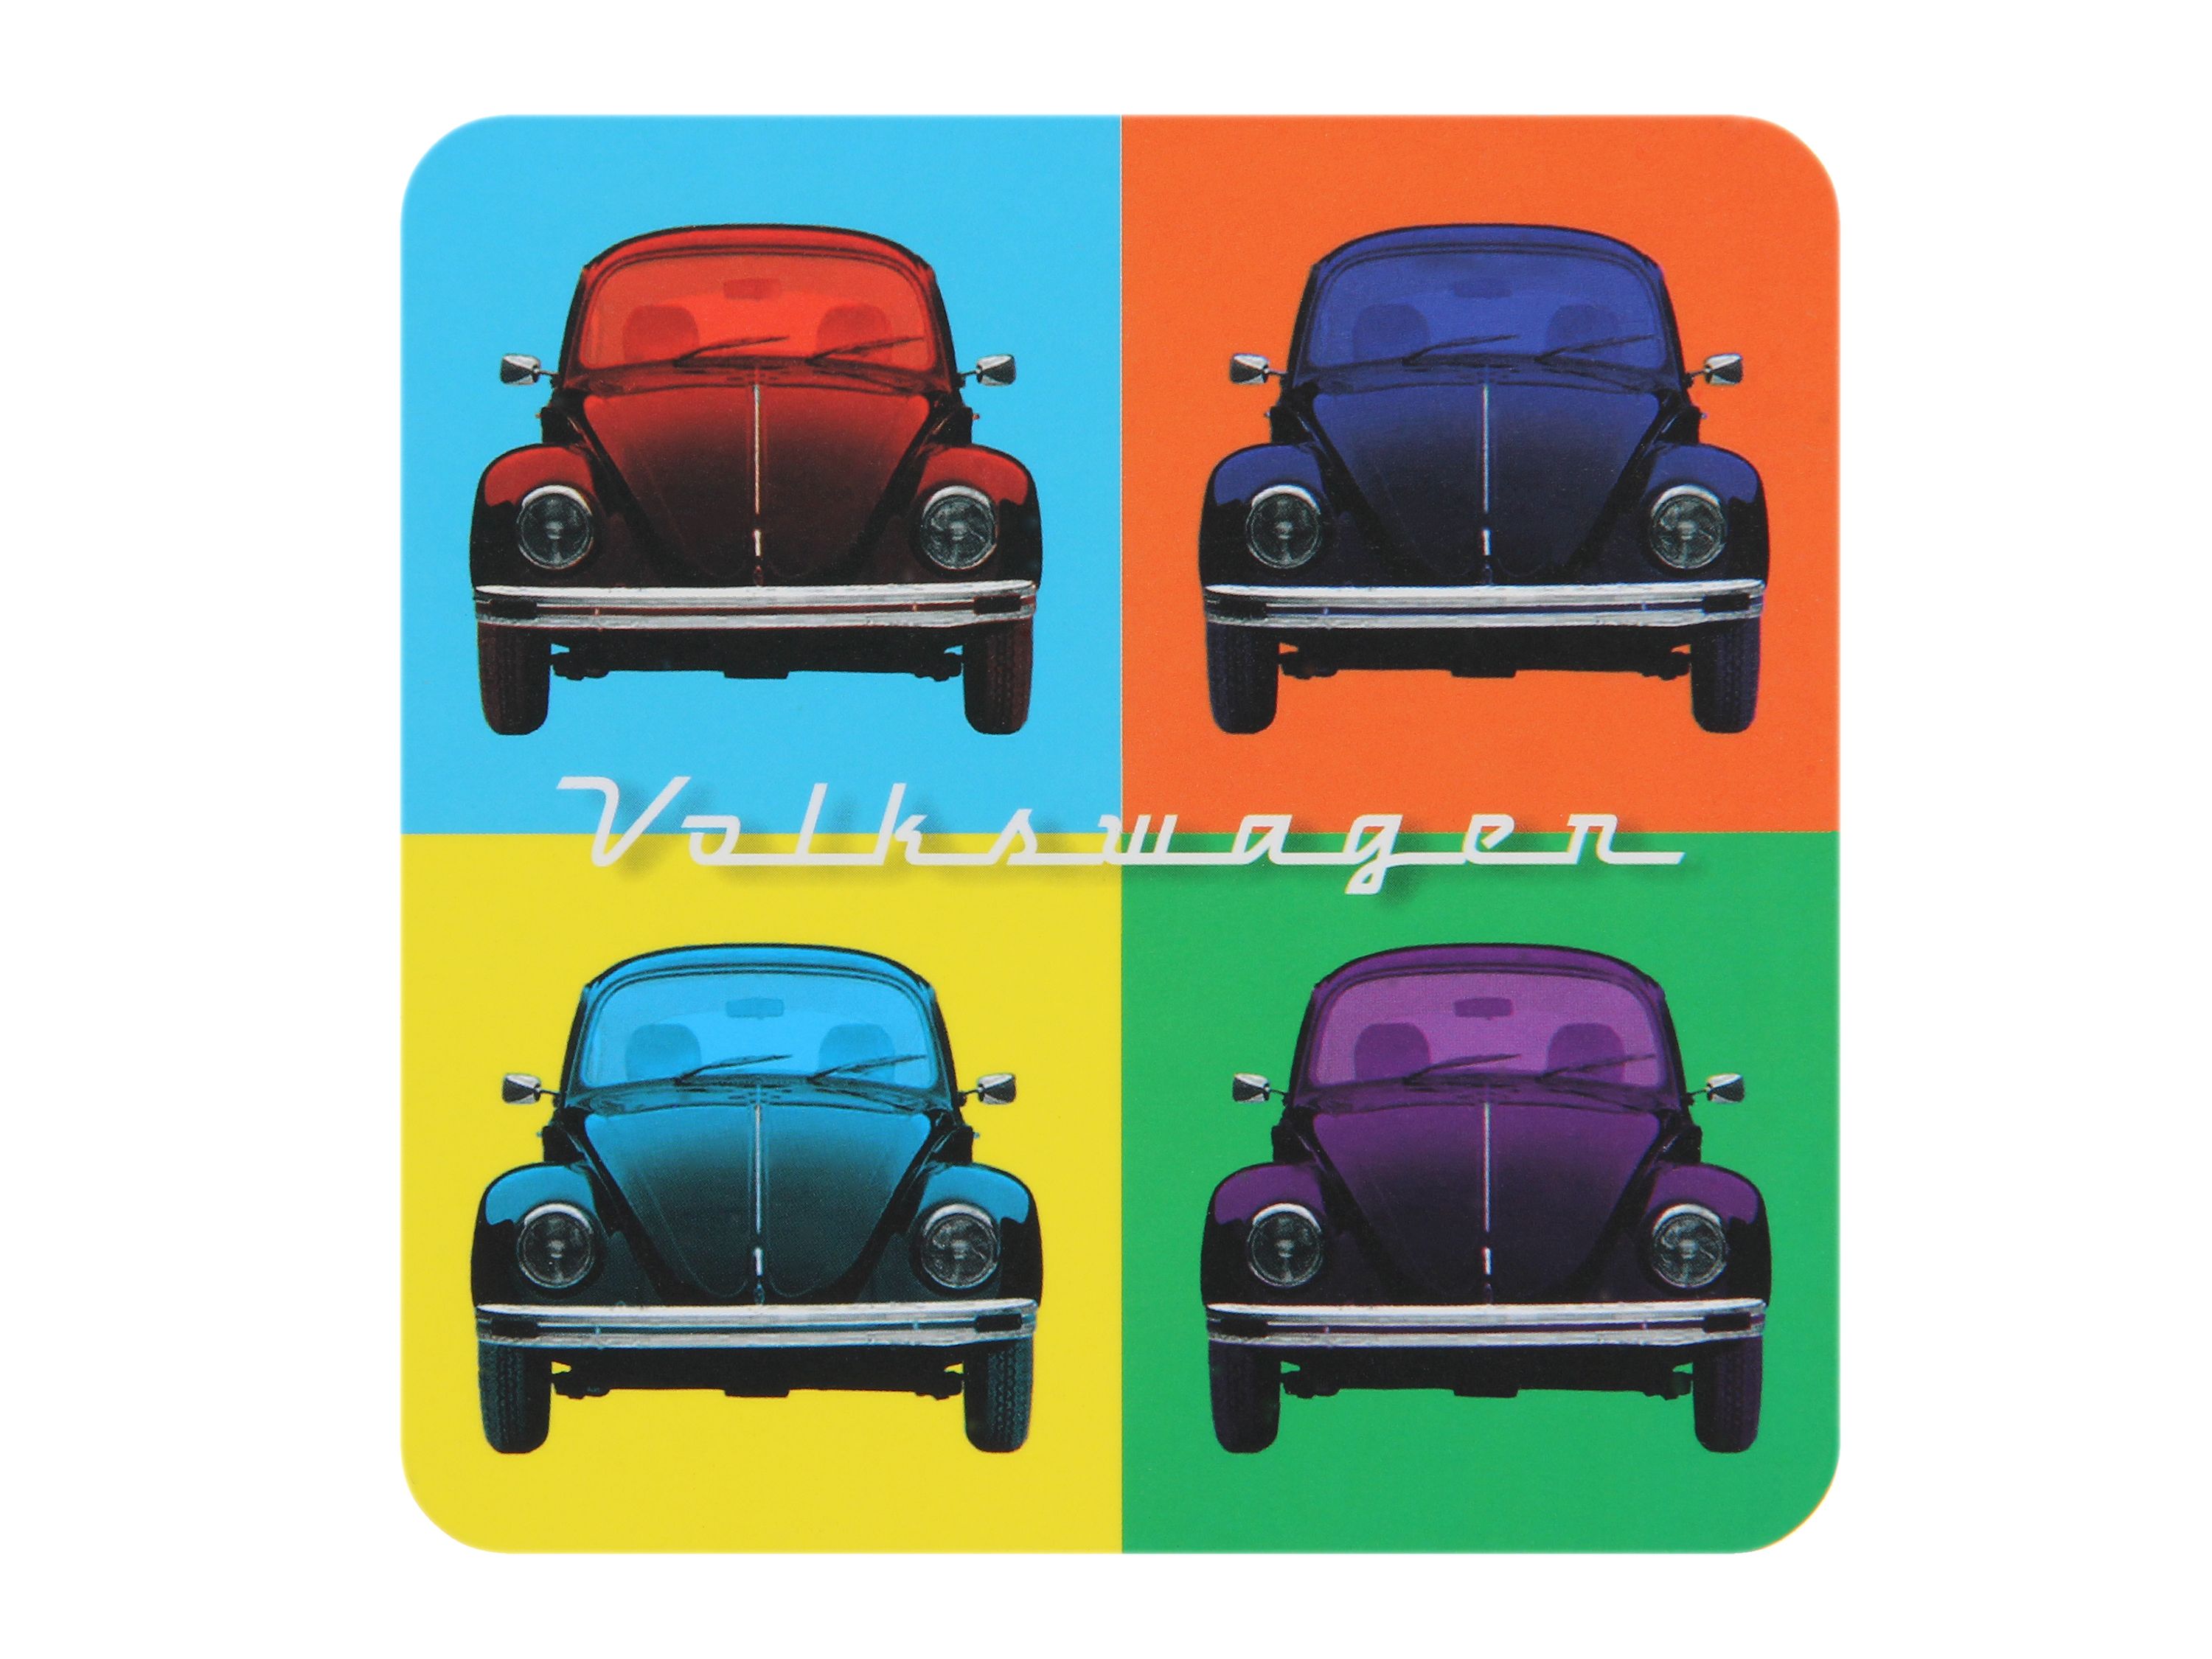 VOLKSWAGEN VW Combi Dessous-de-bouteille, 4 pièces - Multicolore